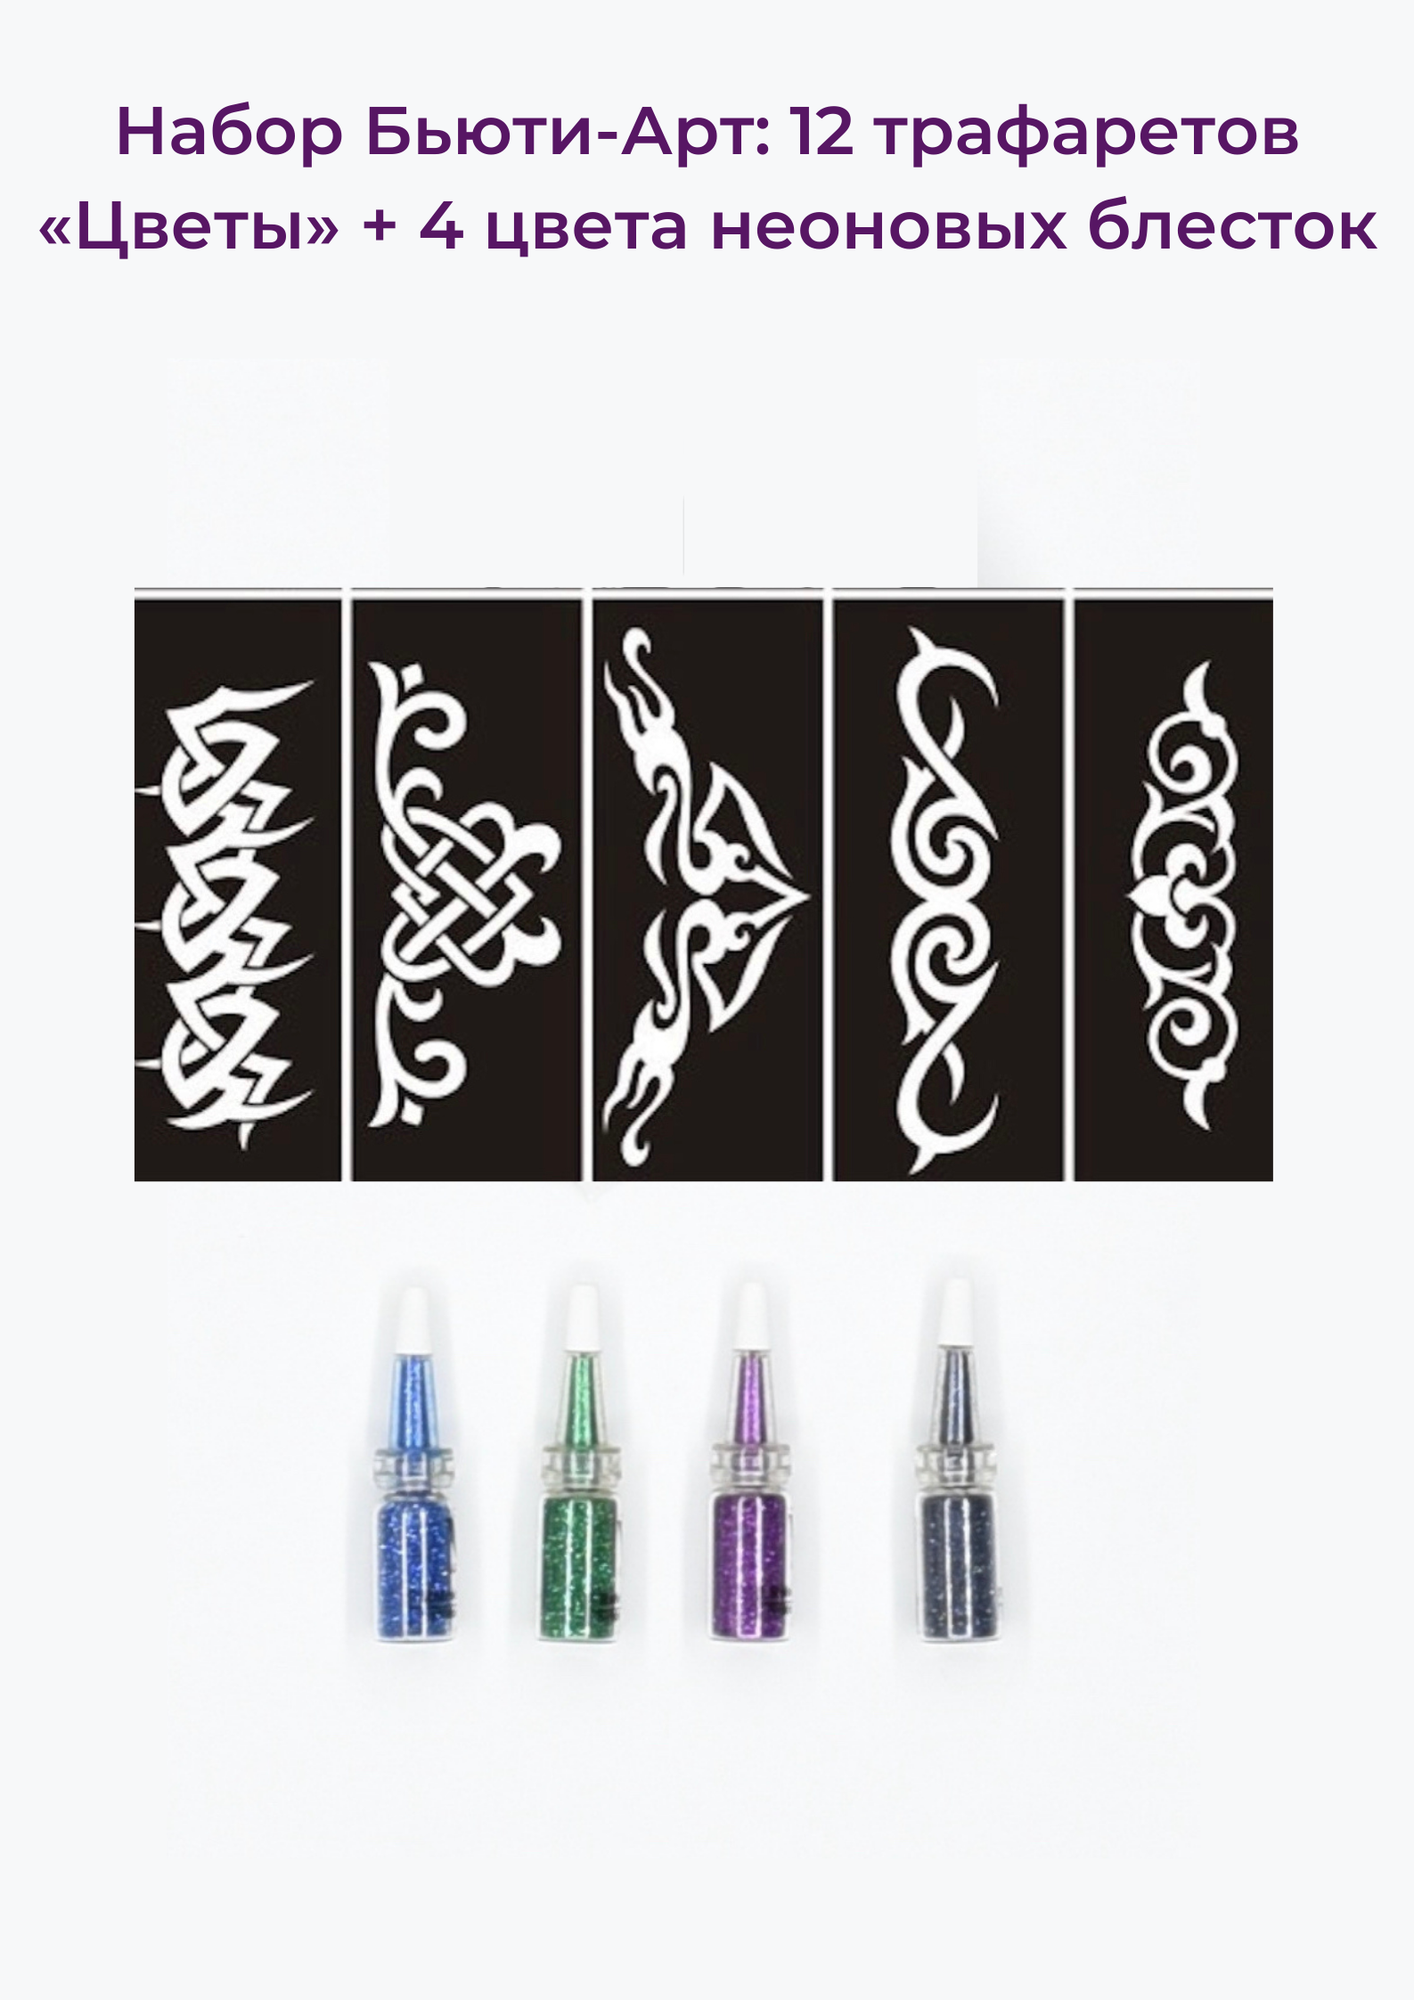 Beauty Concept Набор боди-арт: 12 тату трафаретов (экзотические цветы) + 4 цвета неоновых блесток